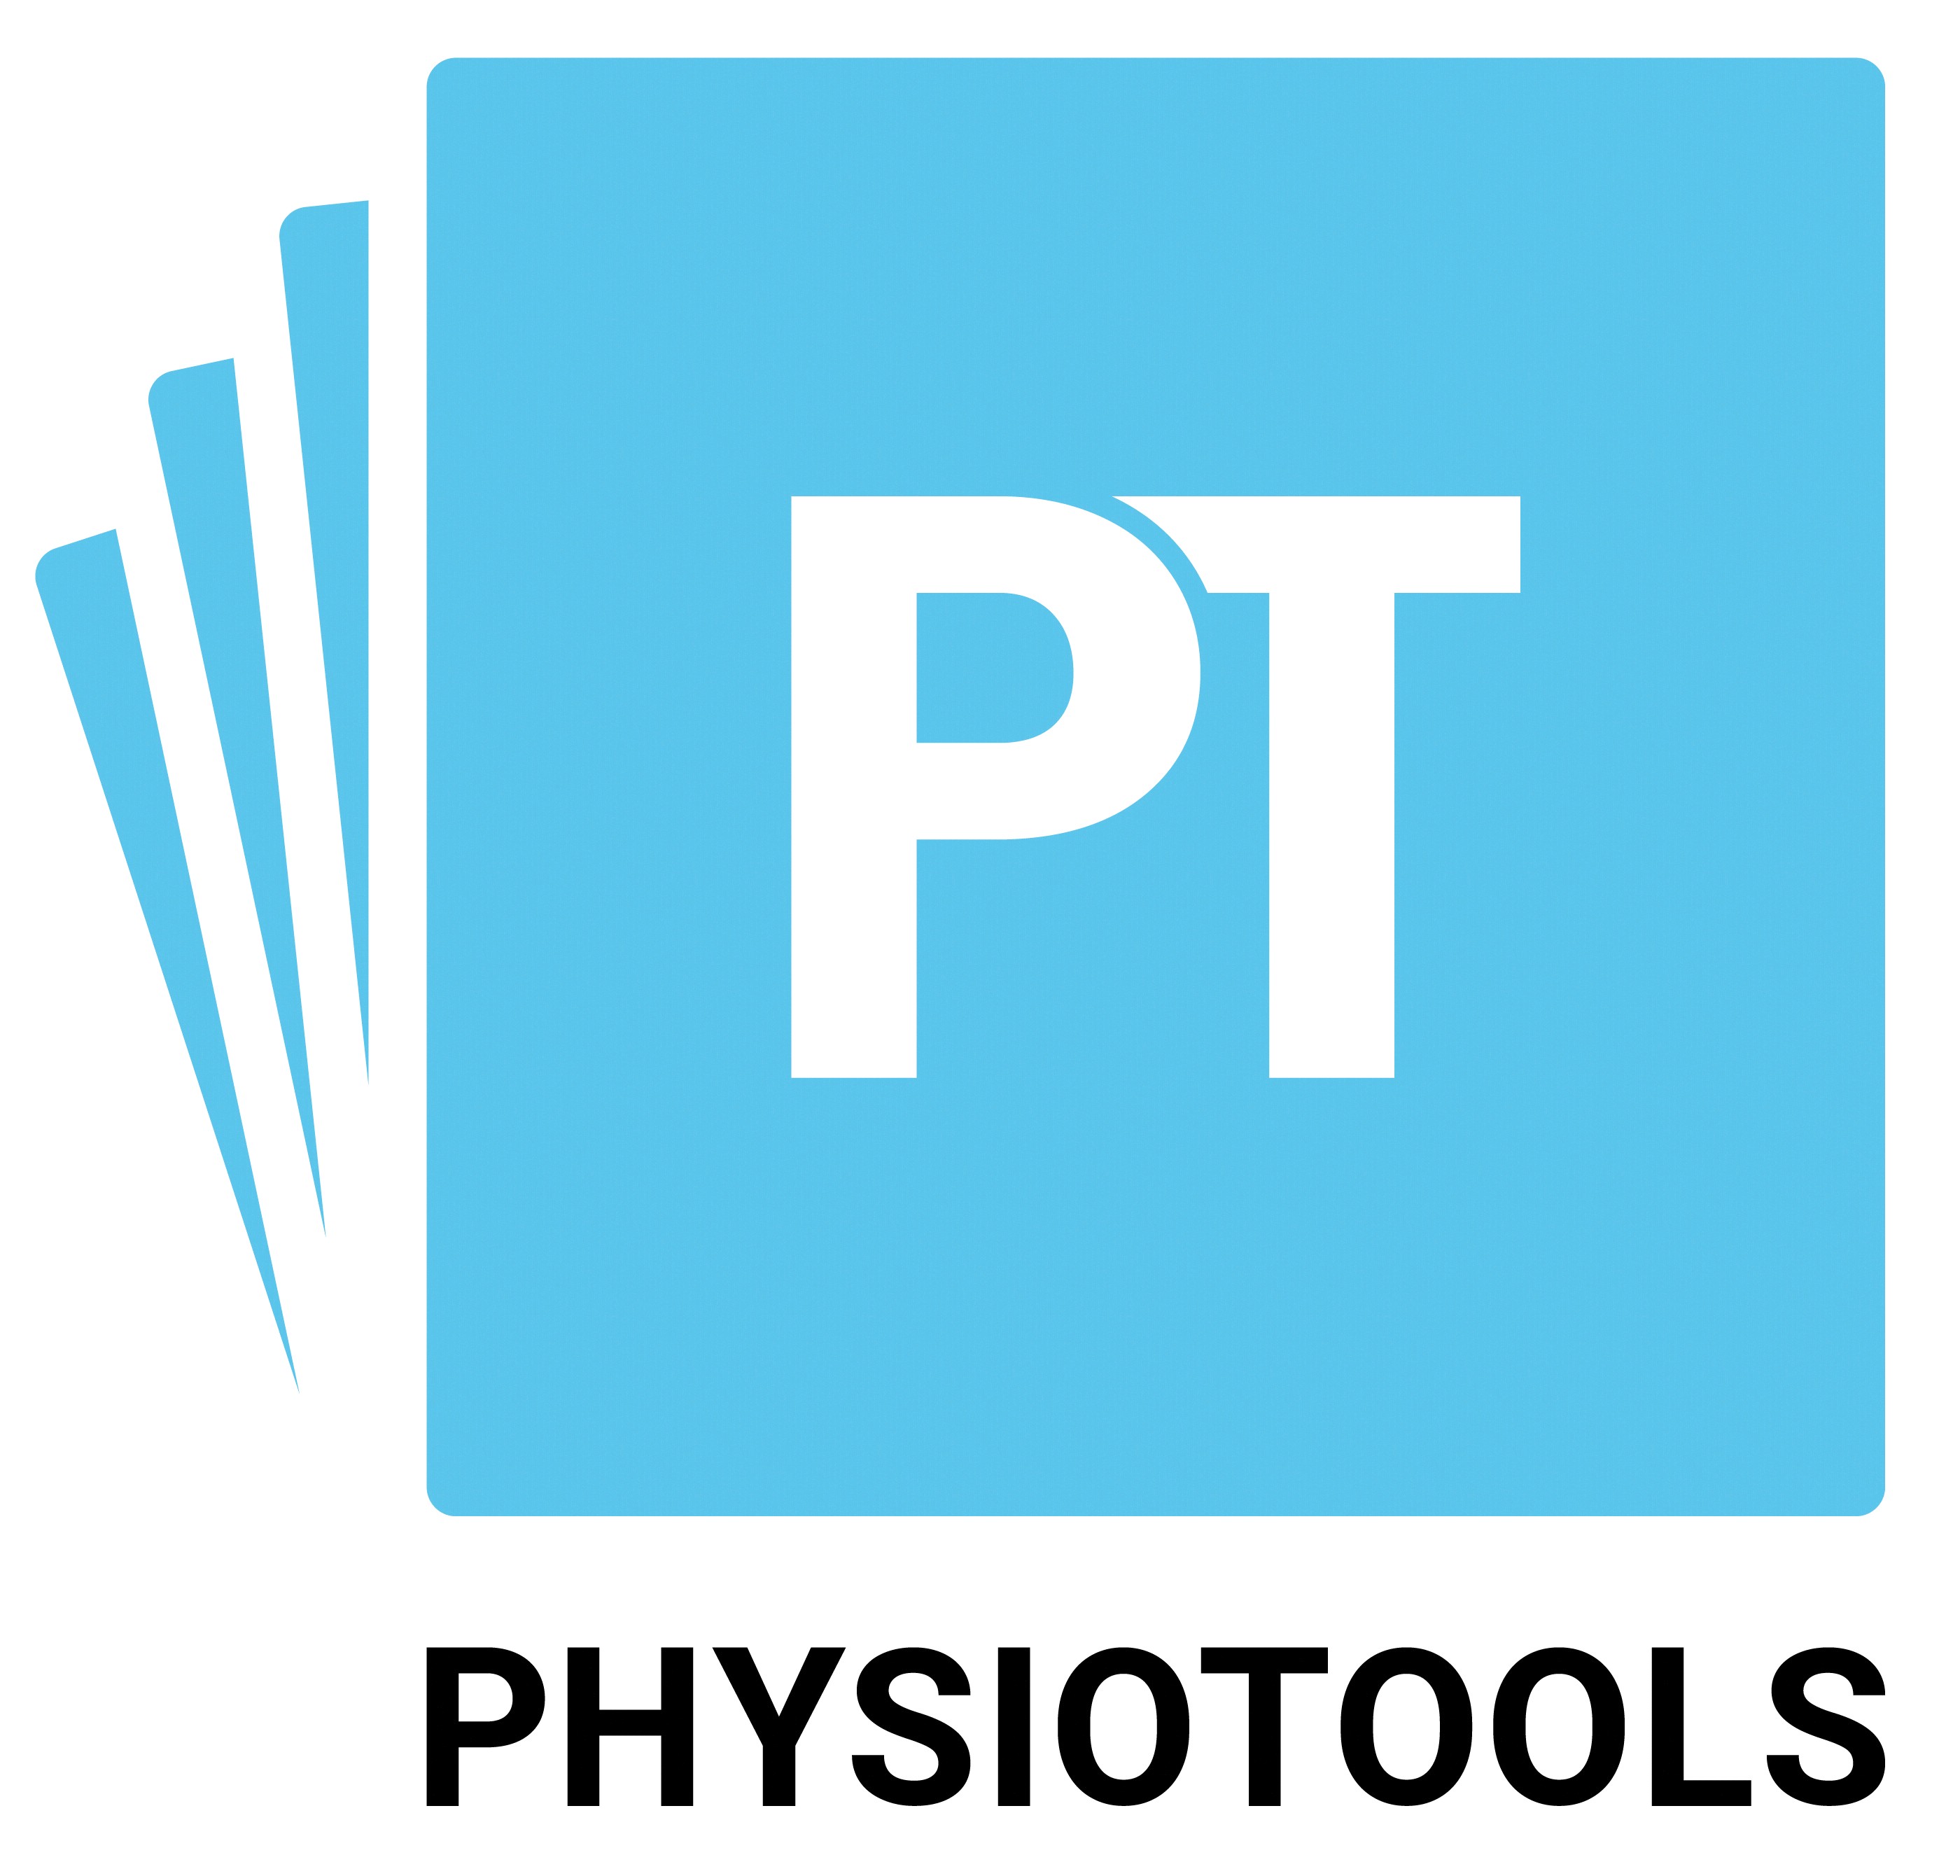 Physiotools